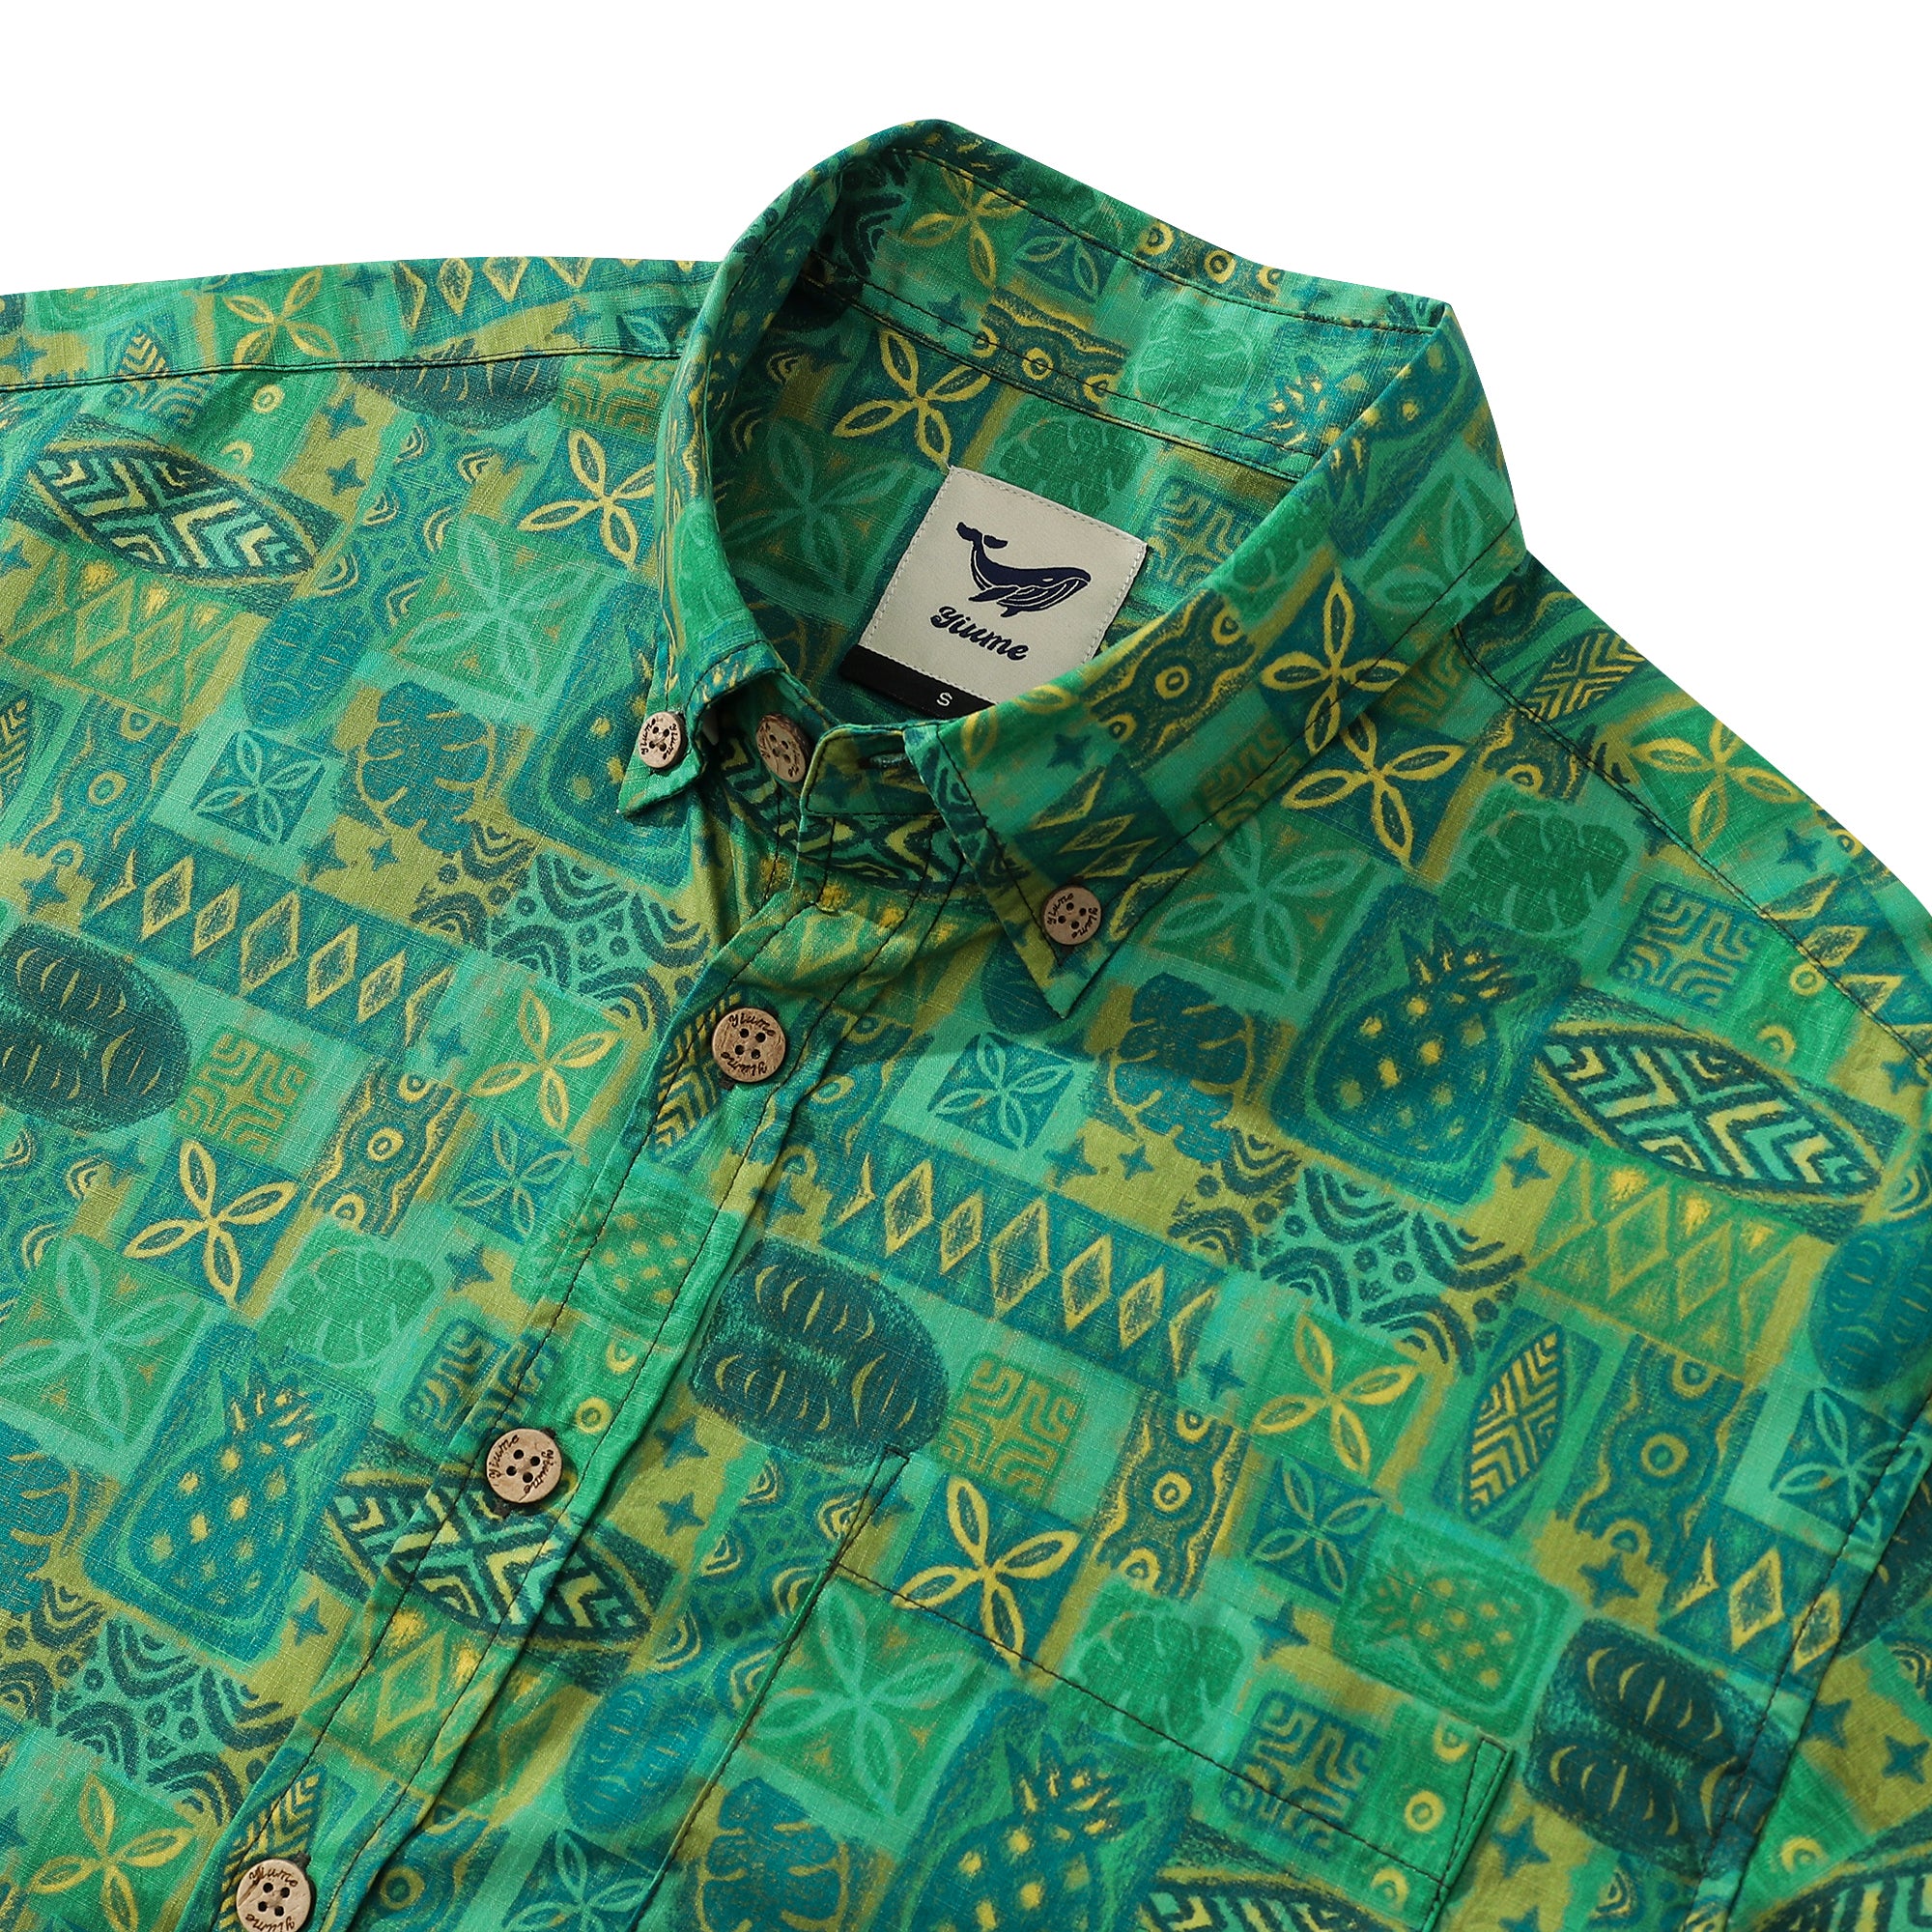 アロハシャツ男性用ティキ・ウッディ・ミラーデザイナーシャツグリーントーテム綿100%